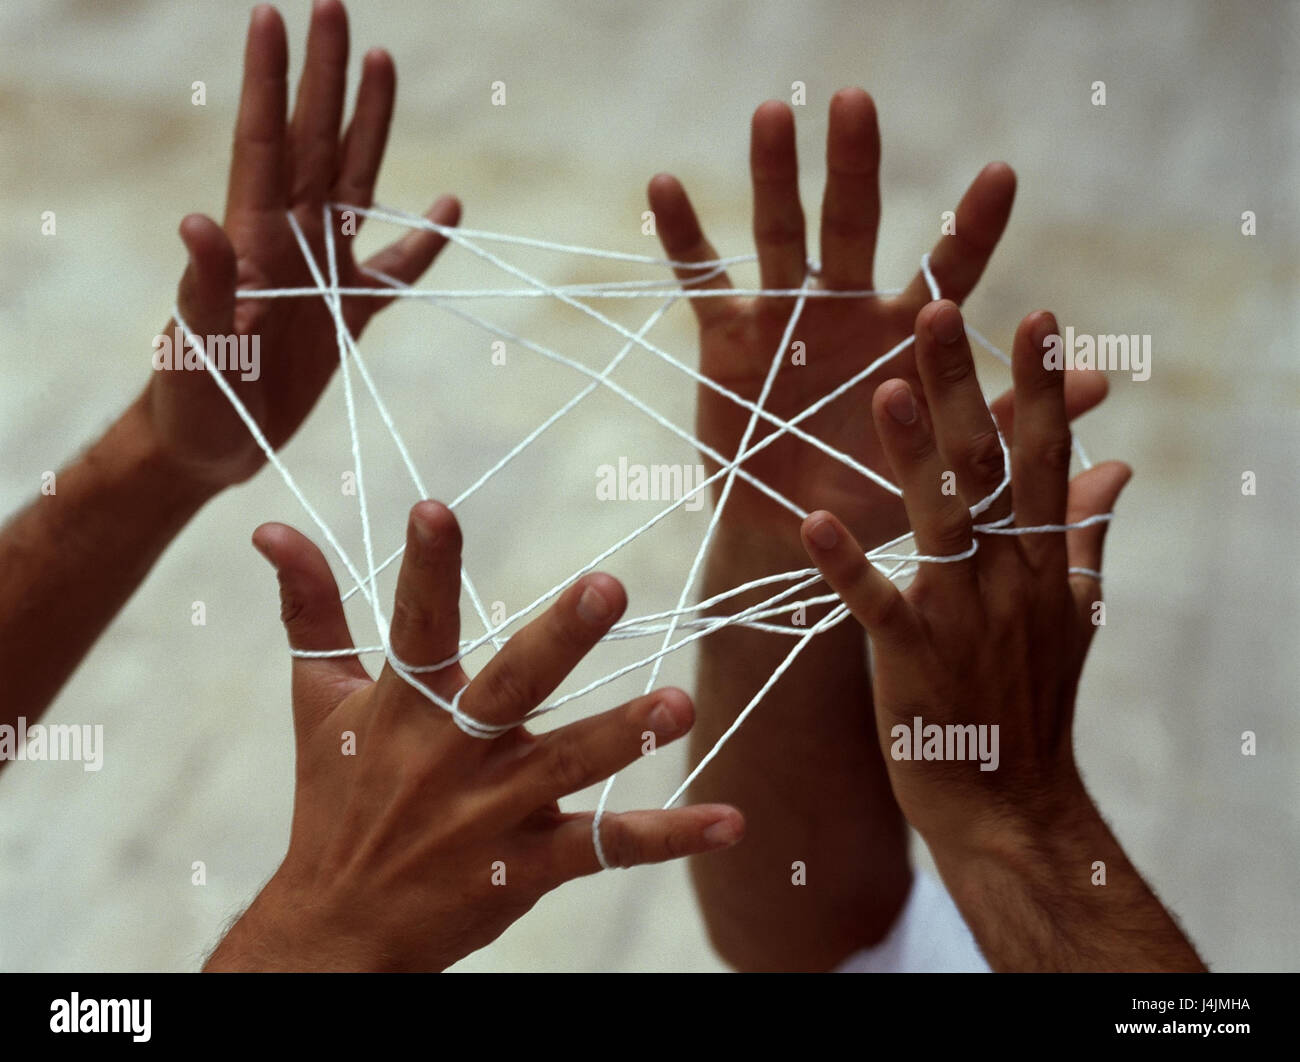 La gente, los detalles, las manos, los dedos, las manos, los hombres de  juego mano, hilo, red, juego, habilidad, destreza, talento, habilidad,  acceso directo Fotografía de stock - Alamy